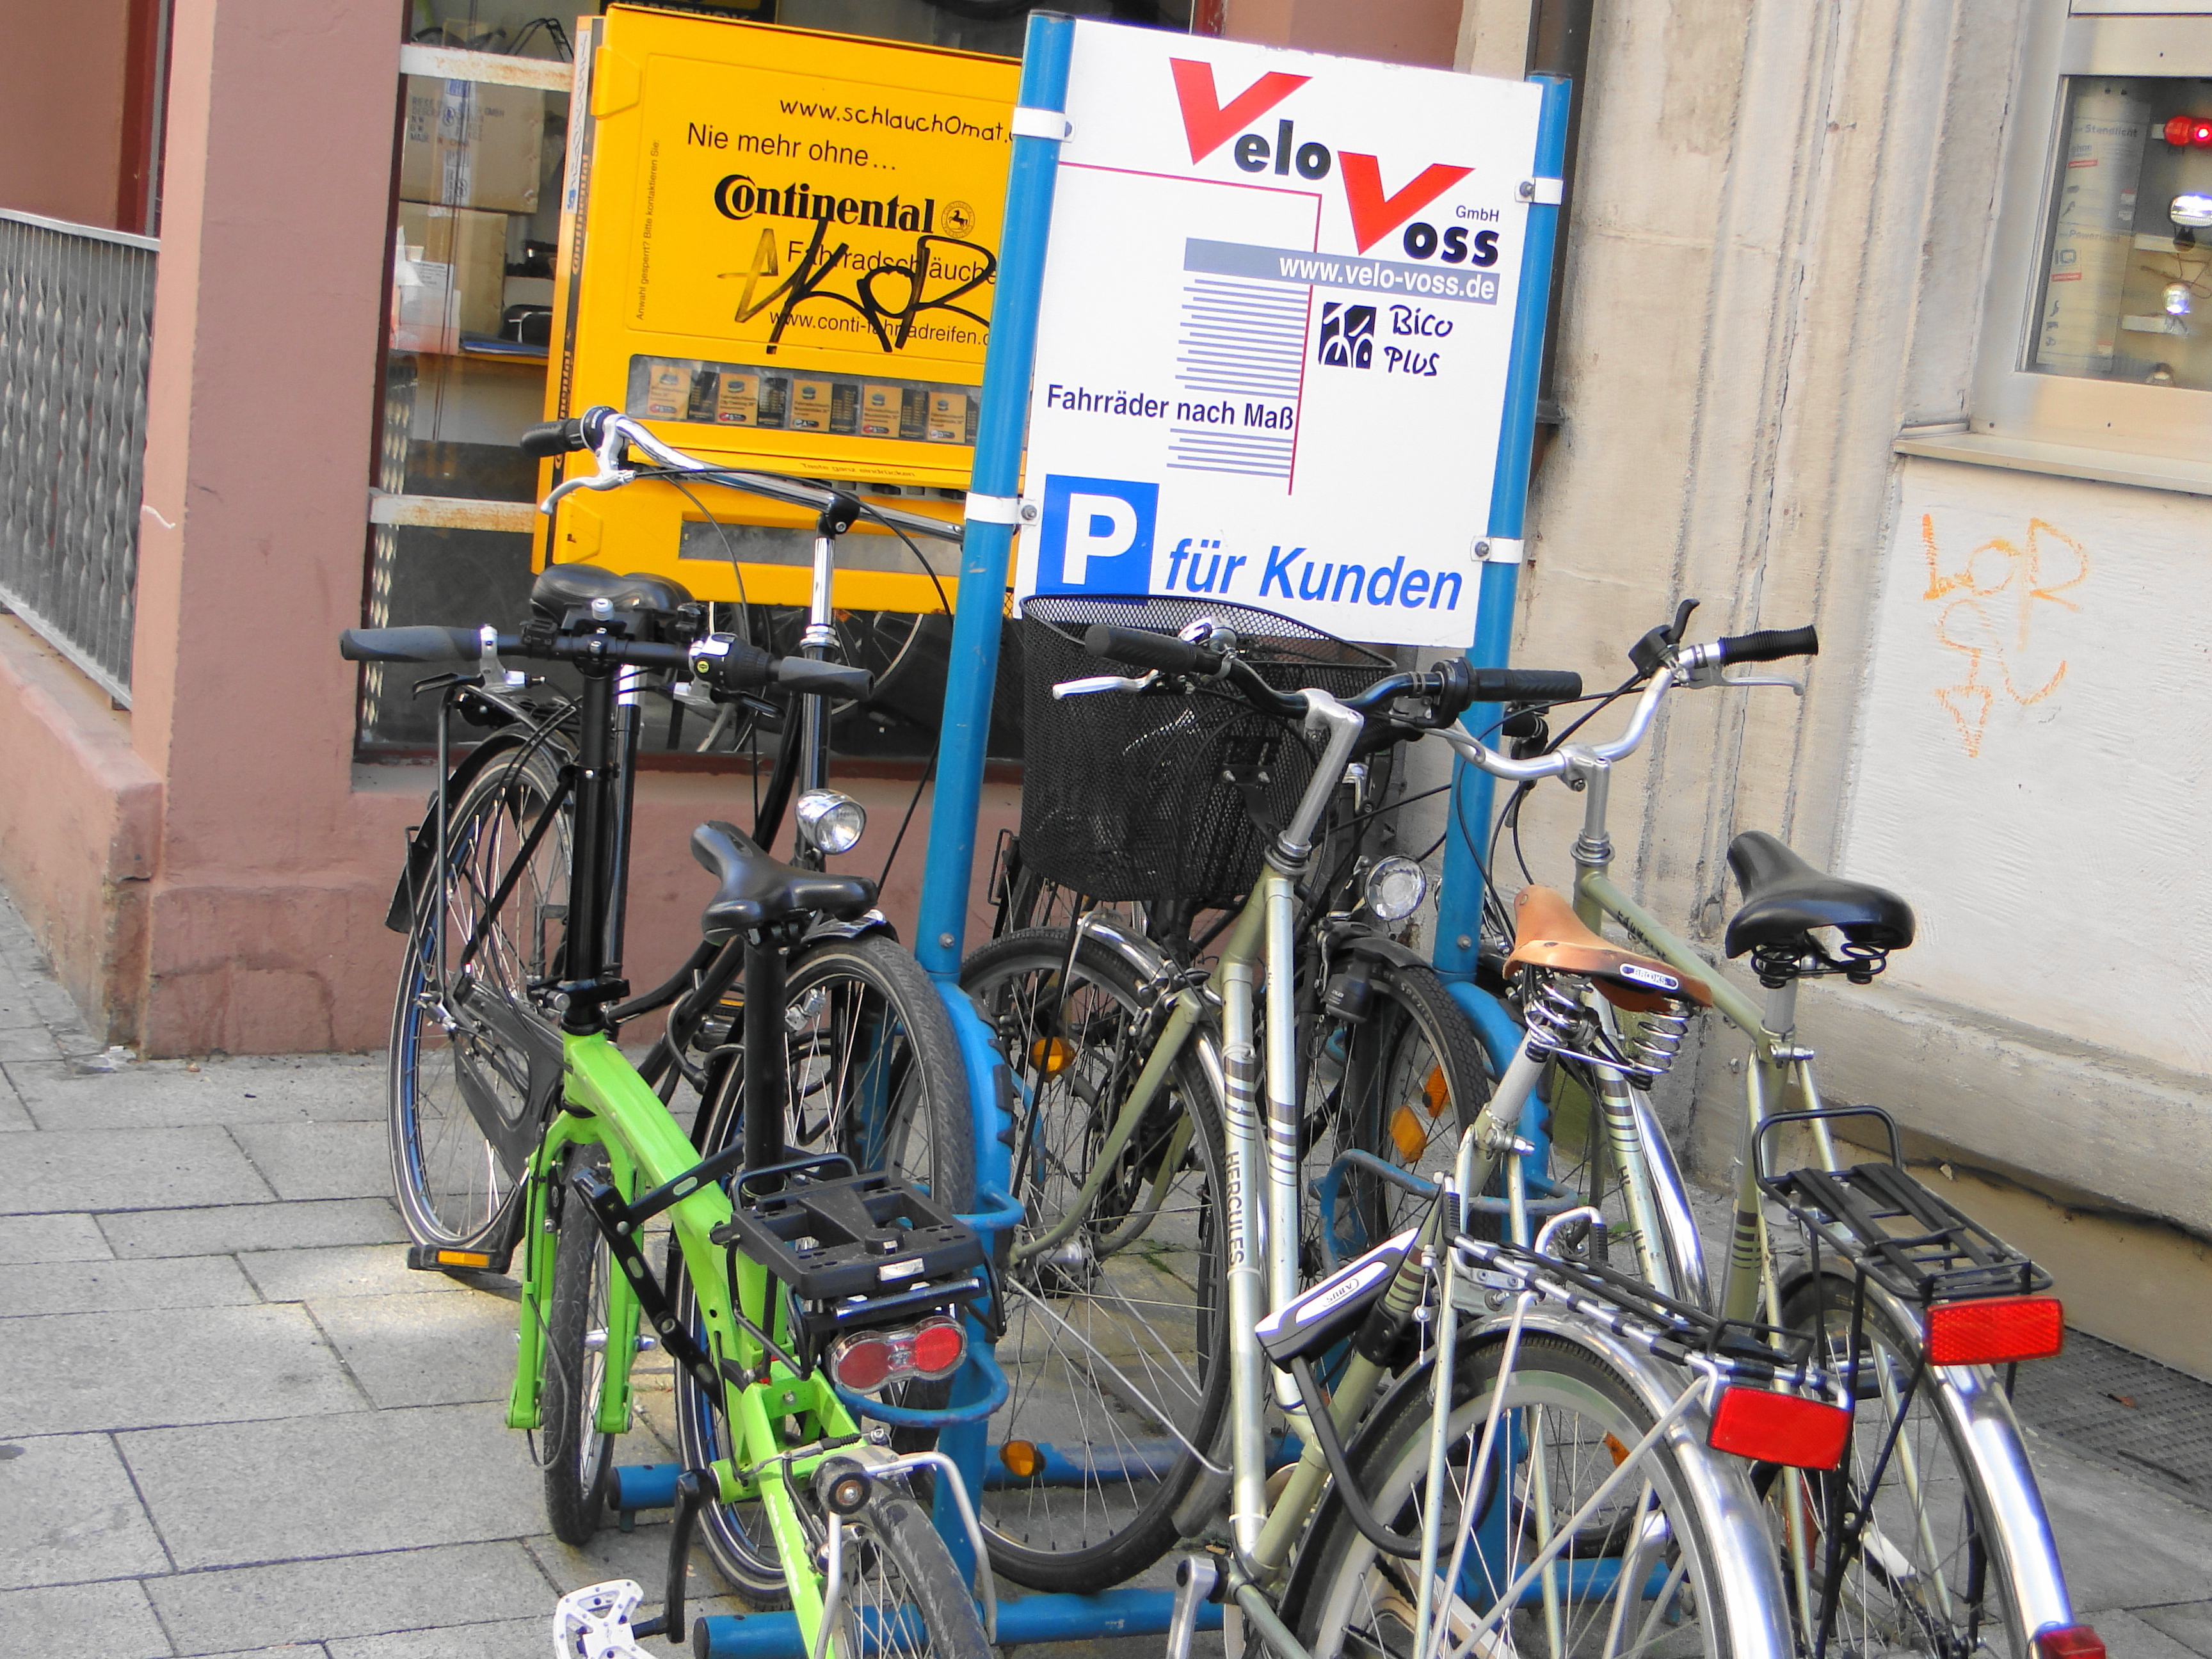 Velo Voss - Fahrräder nach Maß - in der Langen-Geismar-Str. 72